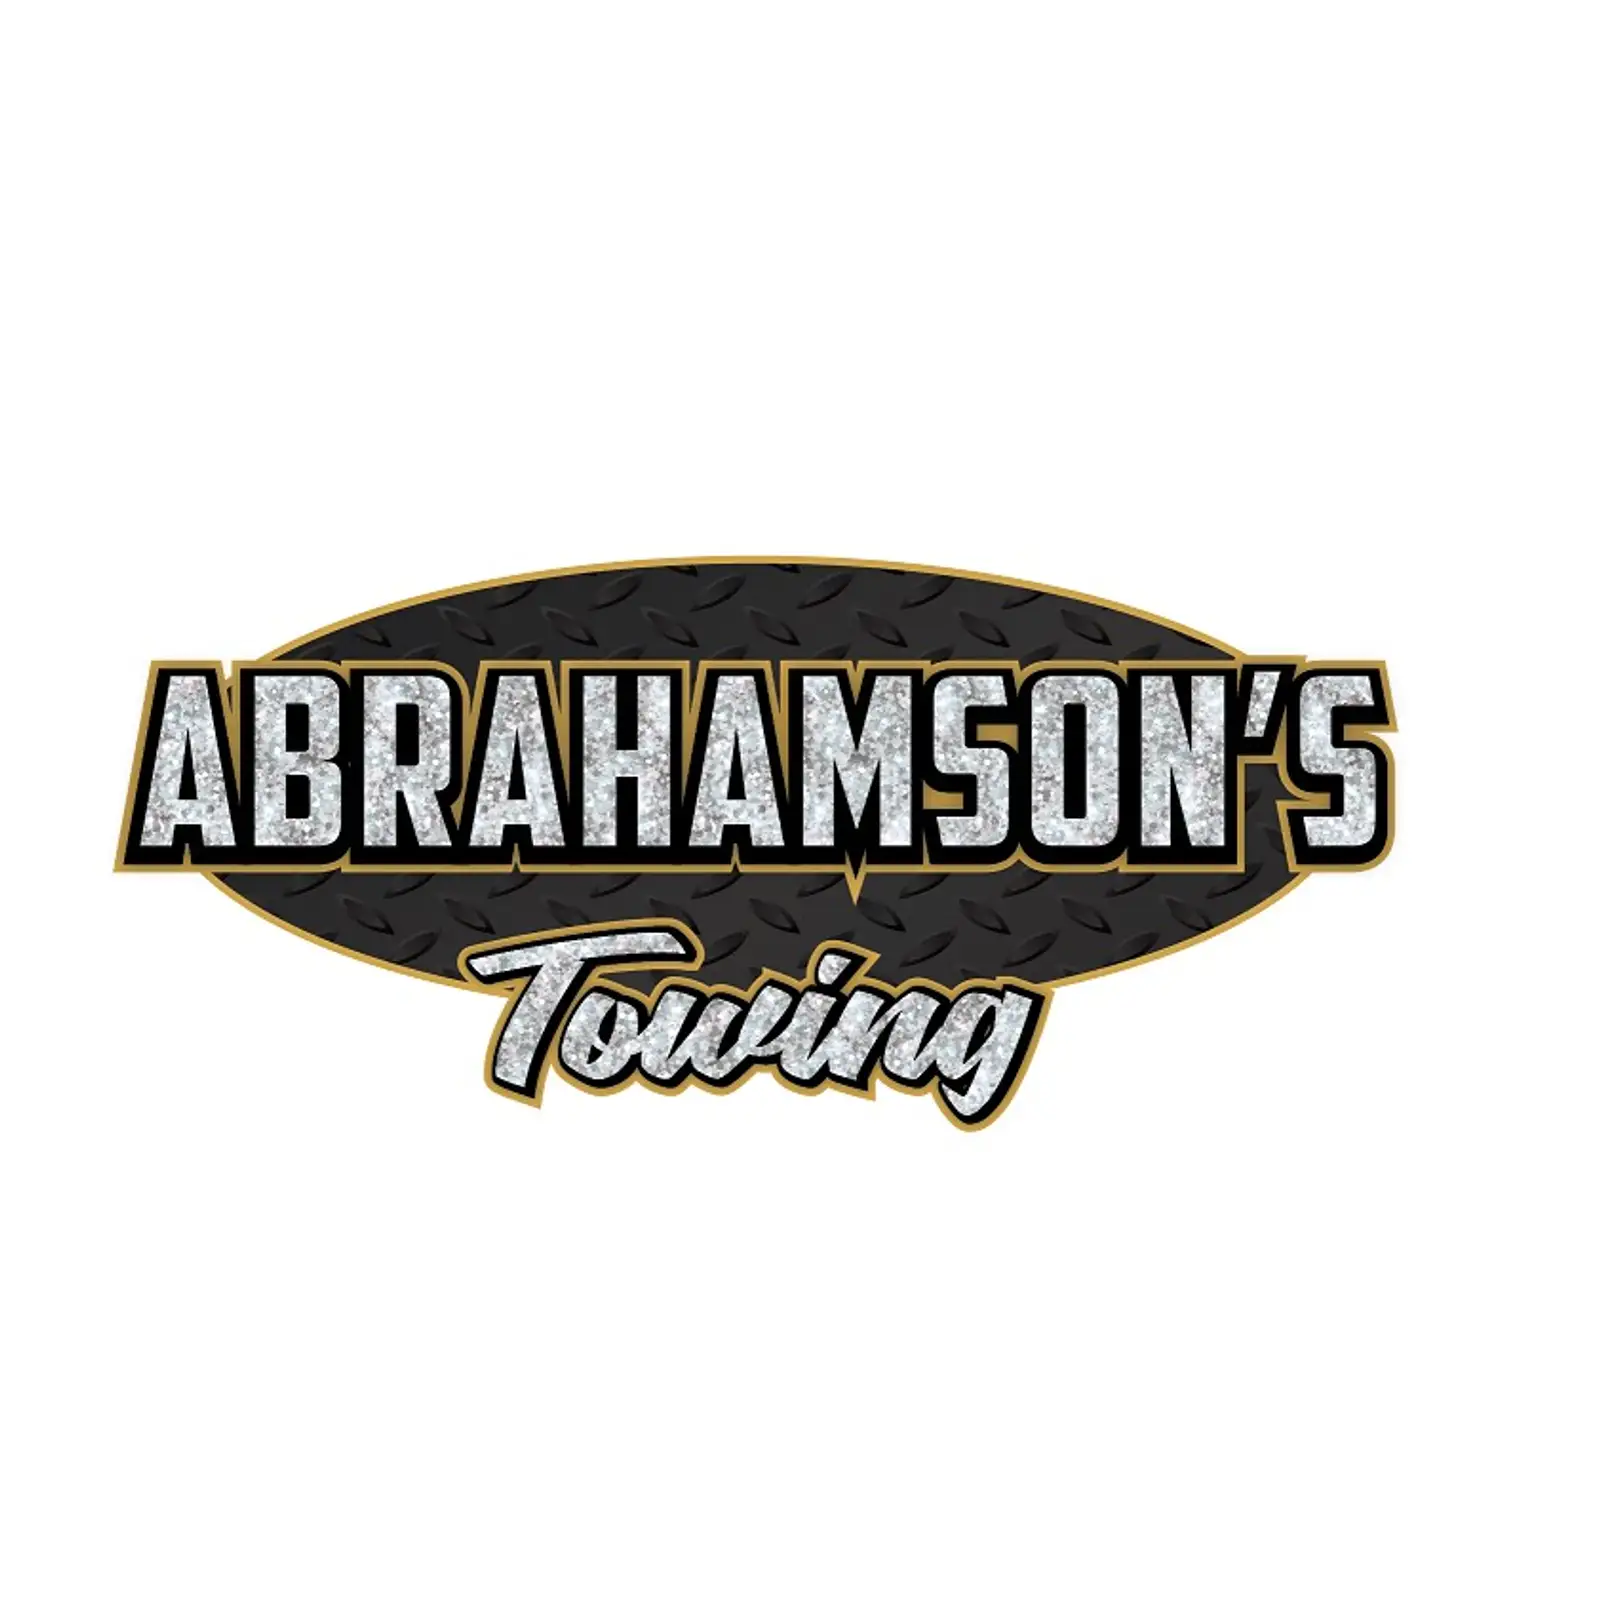 Abrahamson's Towing logo